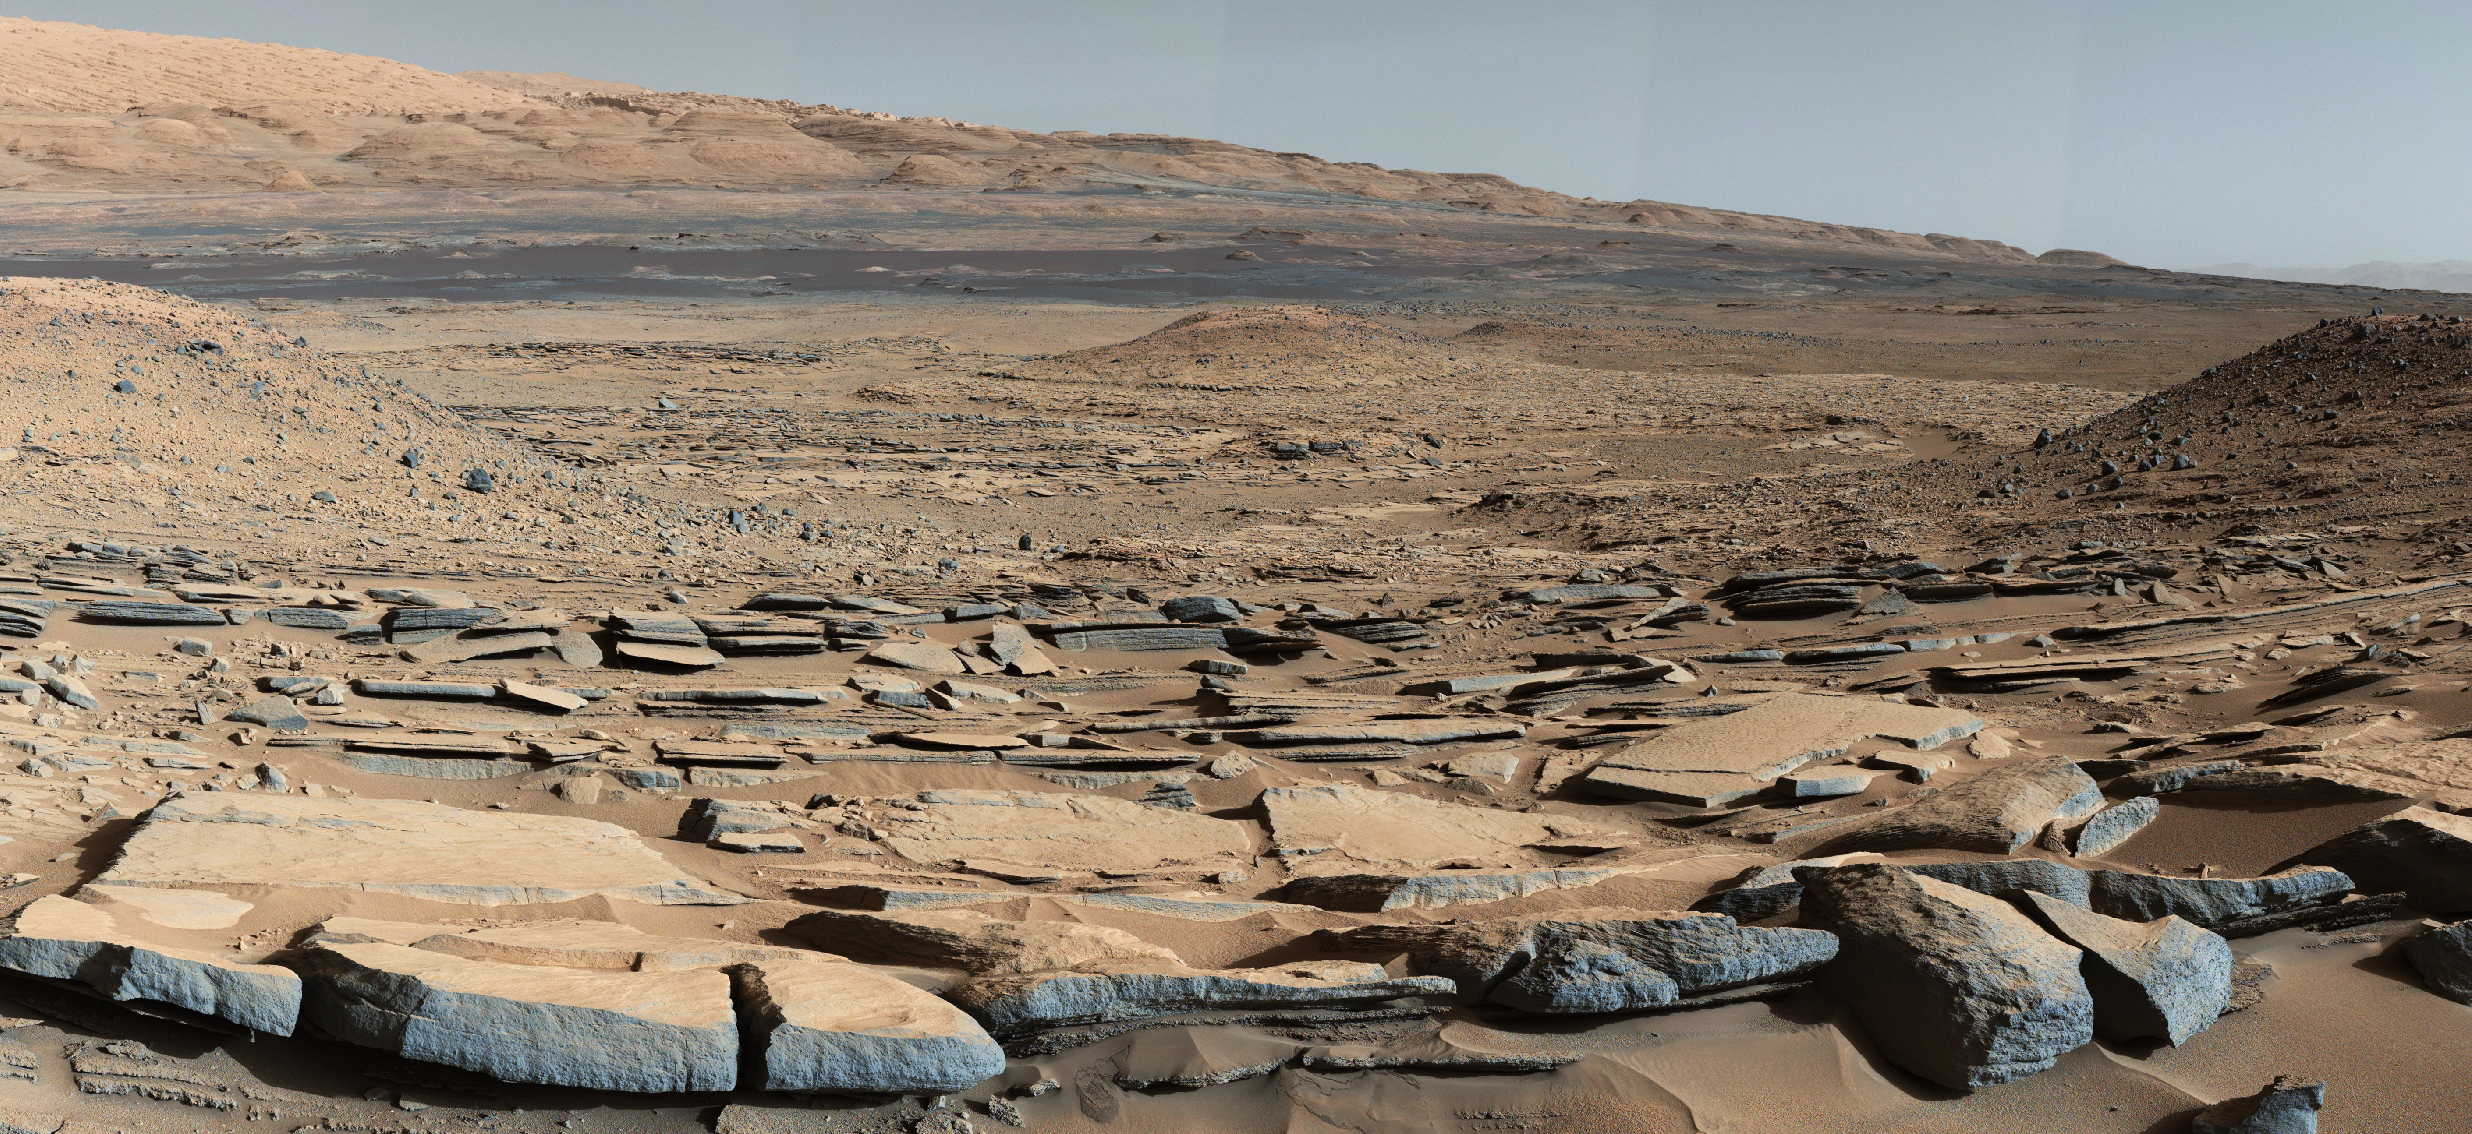 Тайна Красной планеты: зачем землянам Марс